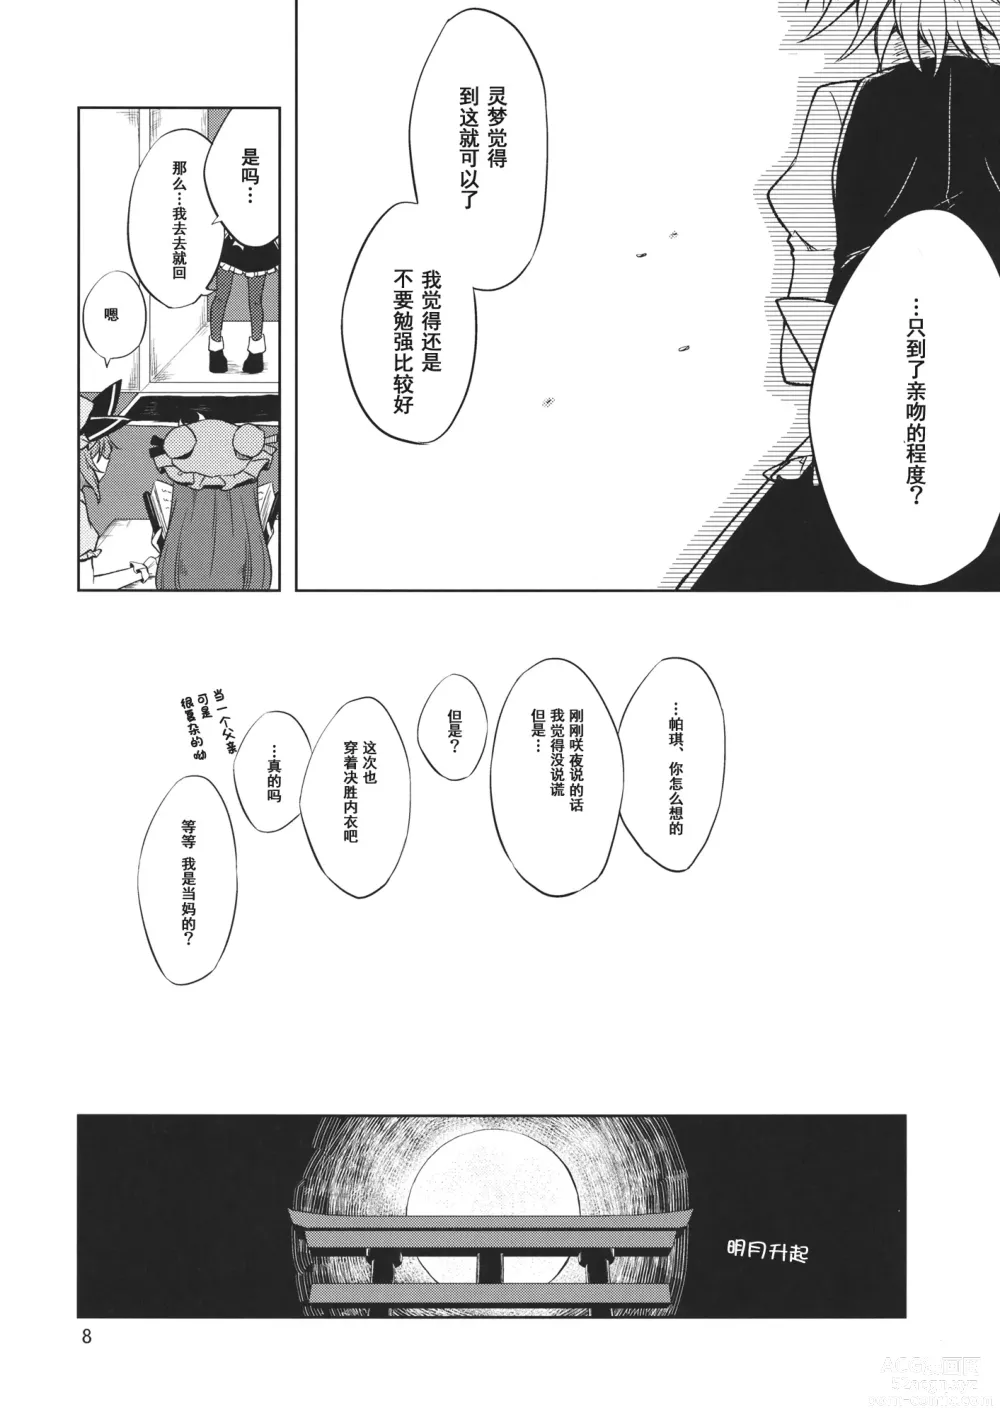 Page 7 of doujinshi Shoyamu - First Night Dream